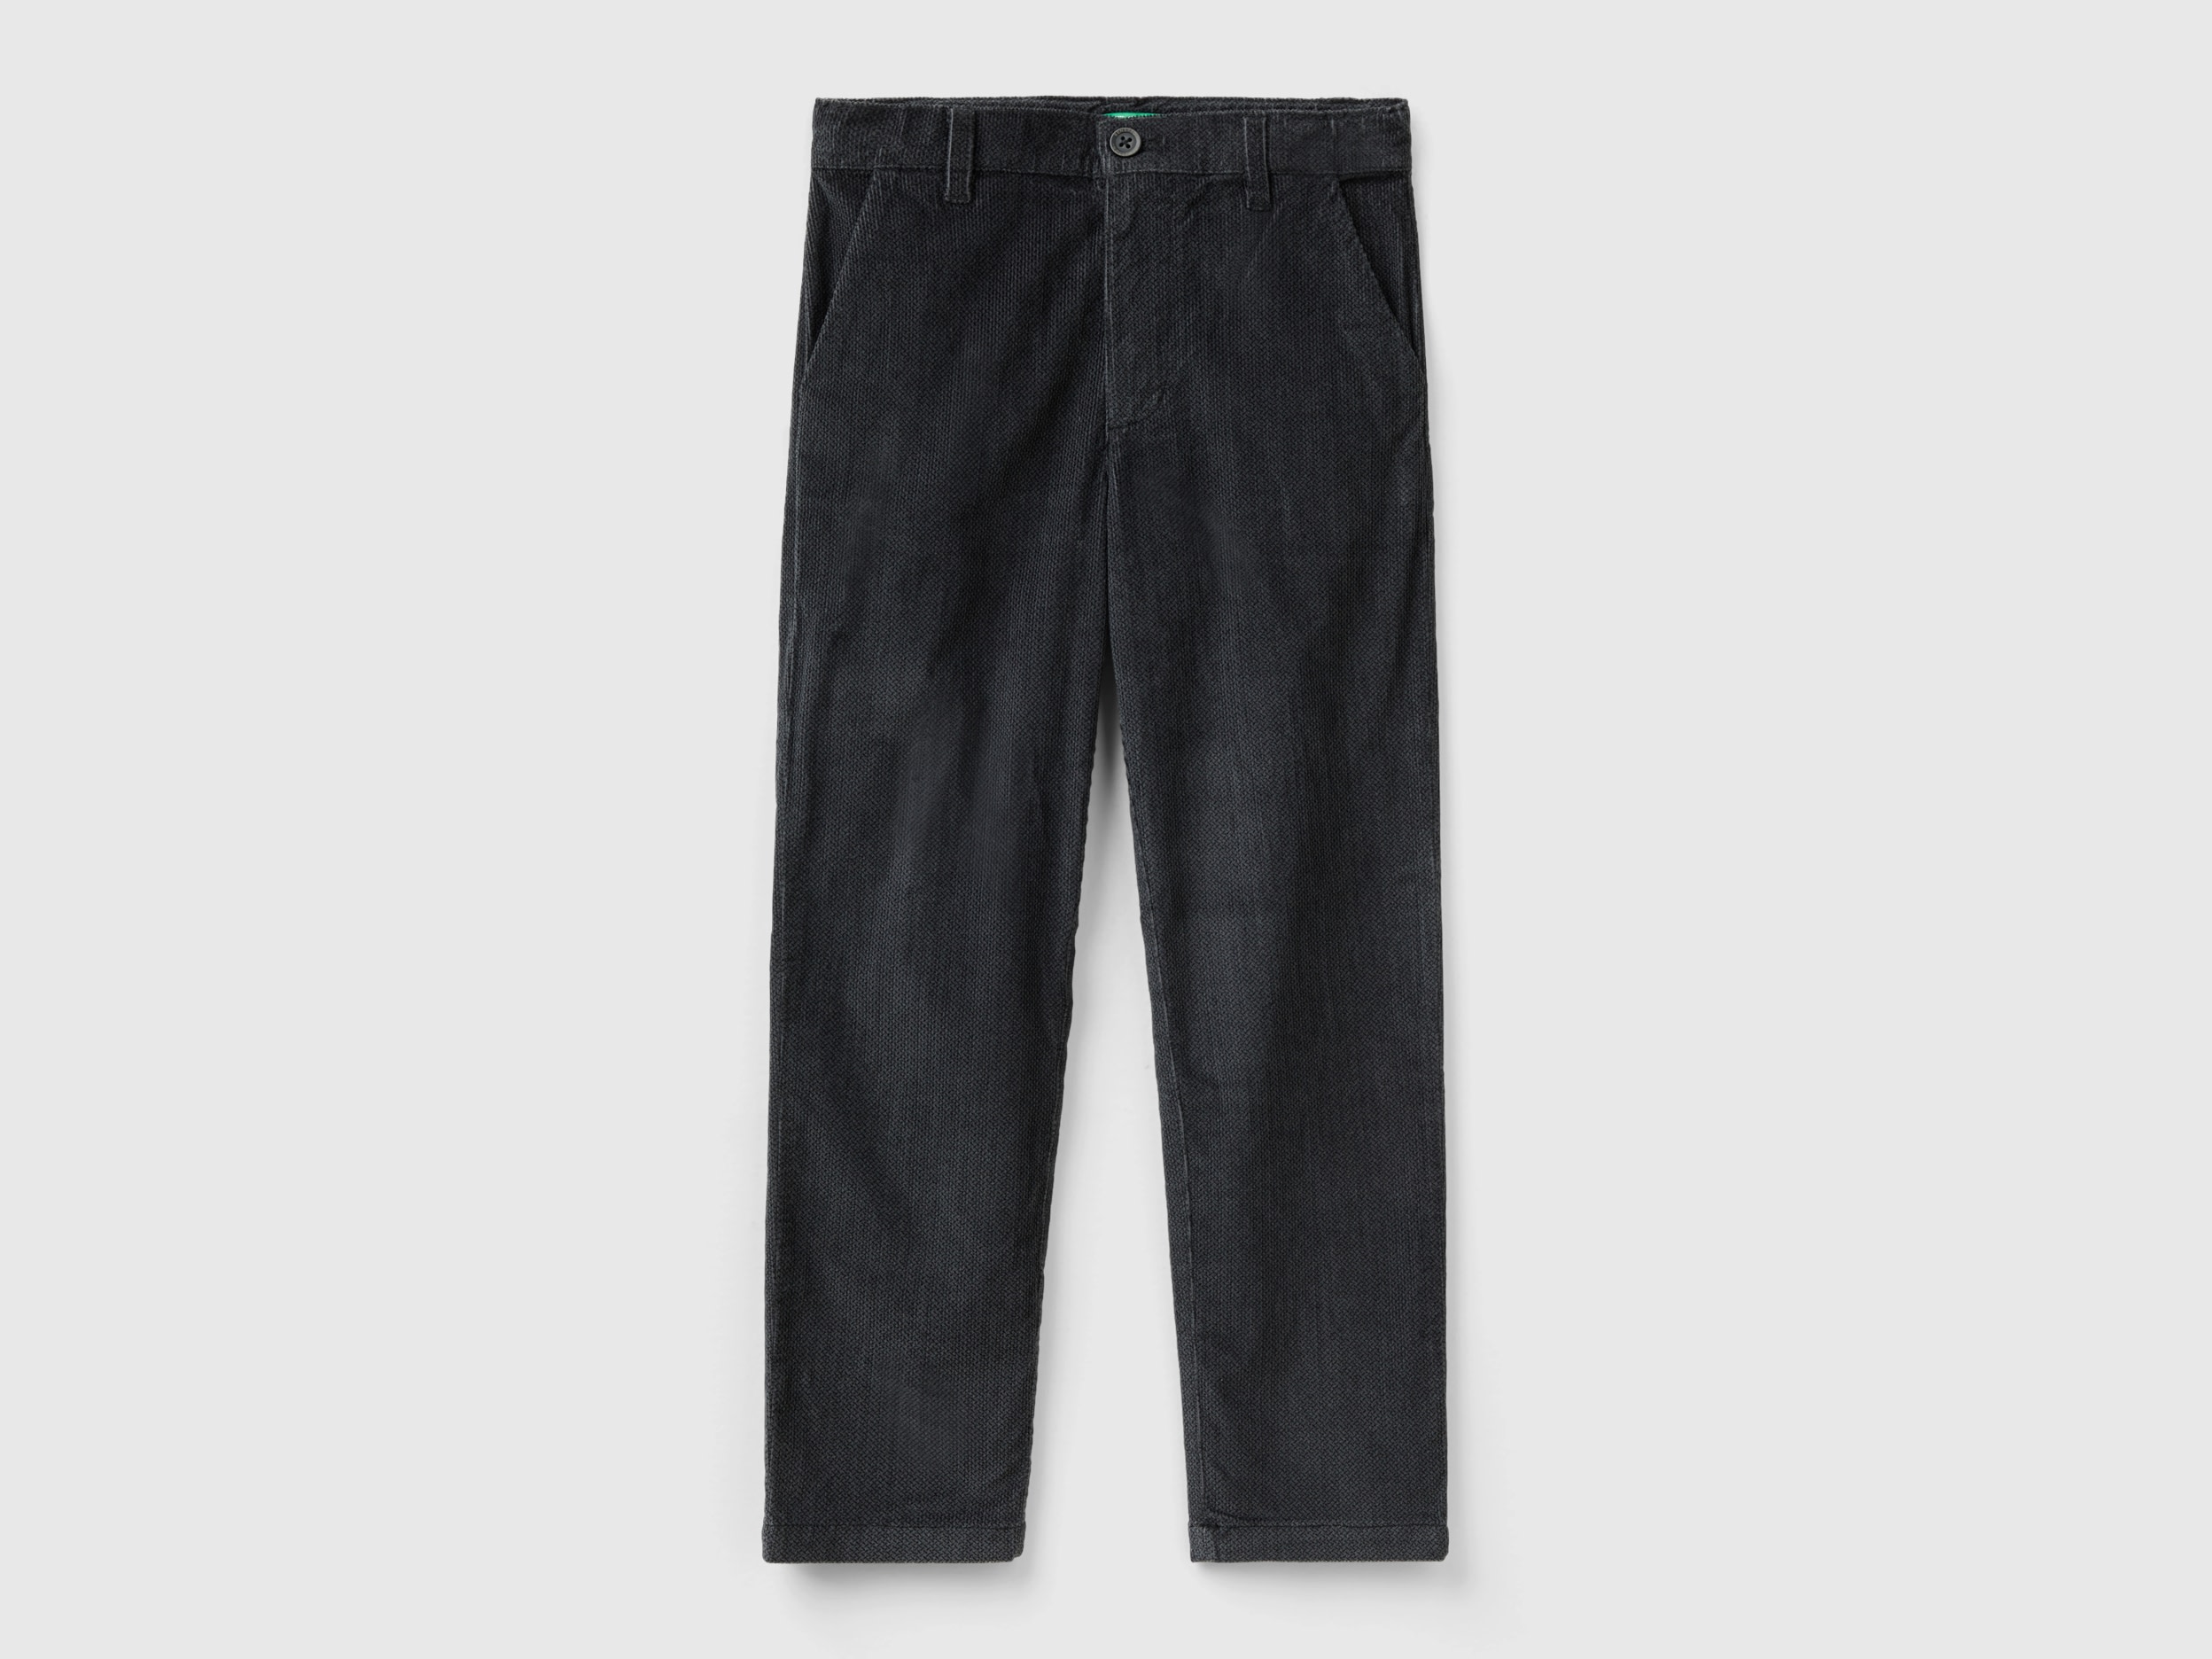 Benetton, Slim Fit Velvet Pants, size L, Dark Gray, Kids